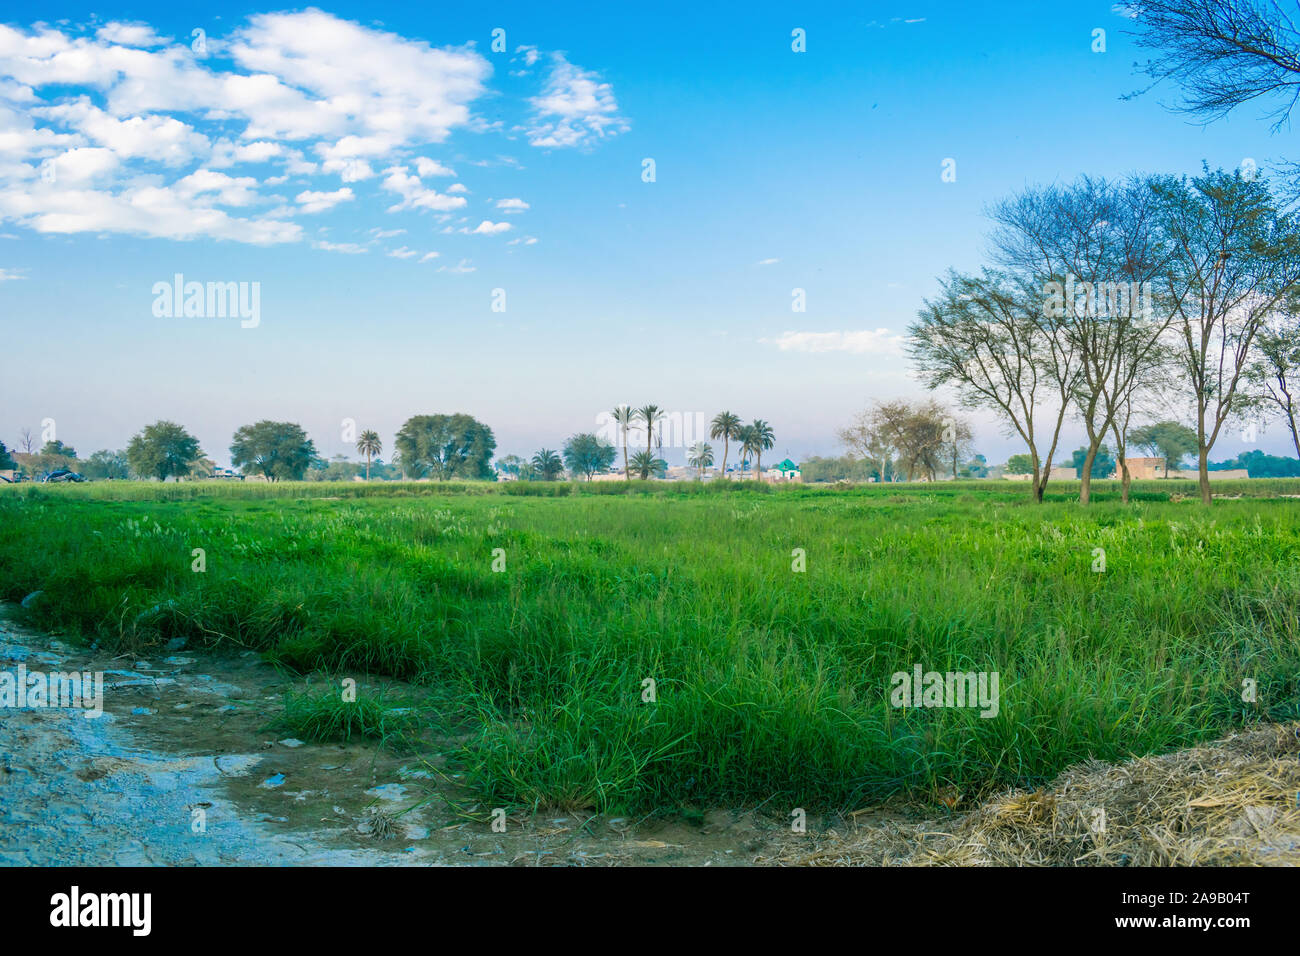 Image paysage de champs verts dans un village du Pendjab pakistanais,Pakistan.paysage de campagne. Banque D'Images